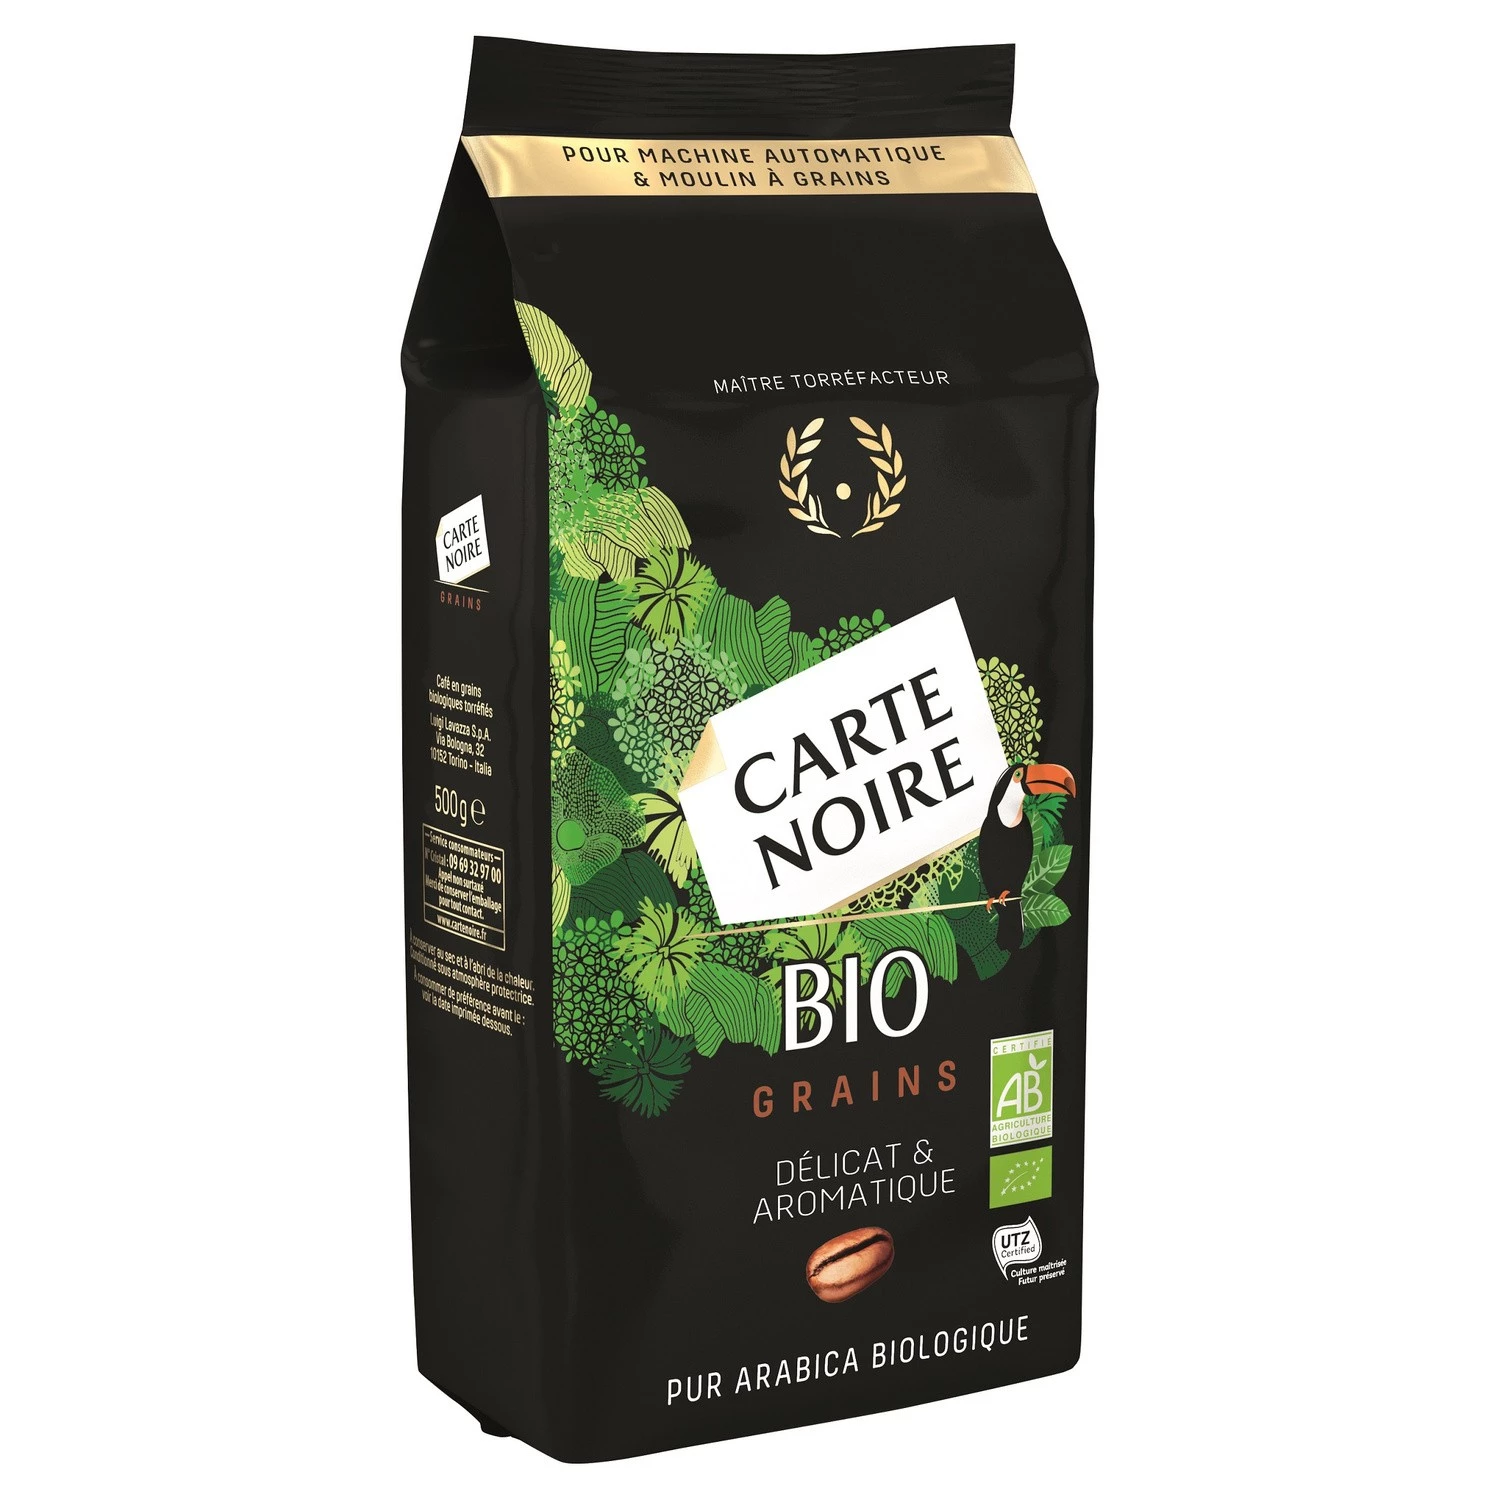 Нежный и ароматный органический кофе в зернах 500г. - CARTE NOIRE